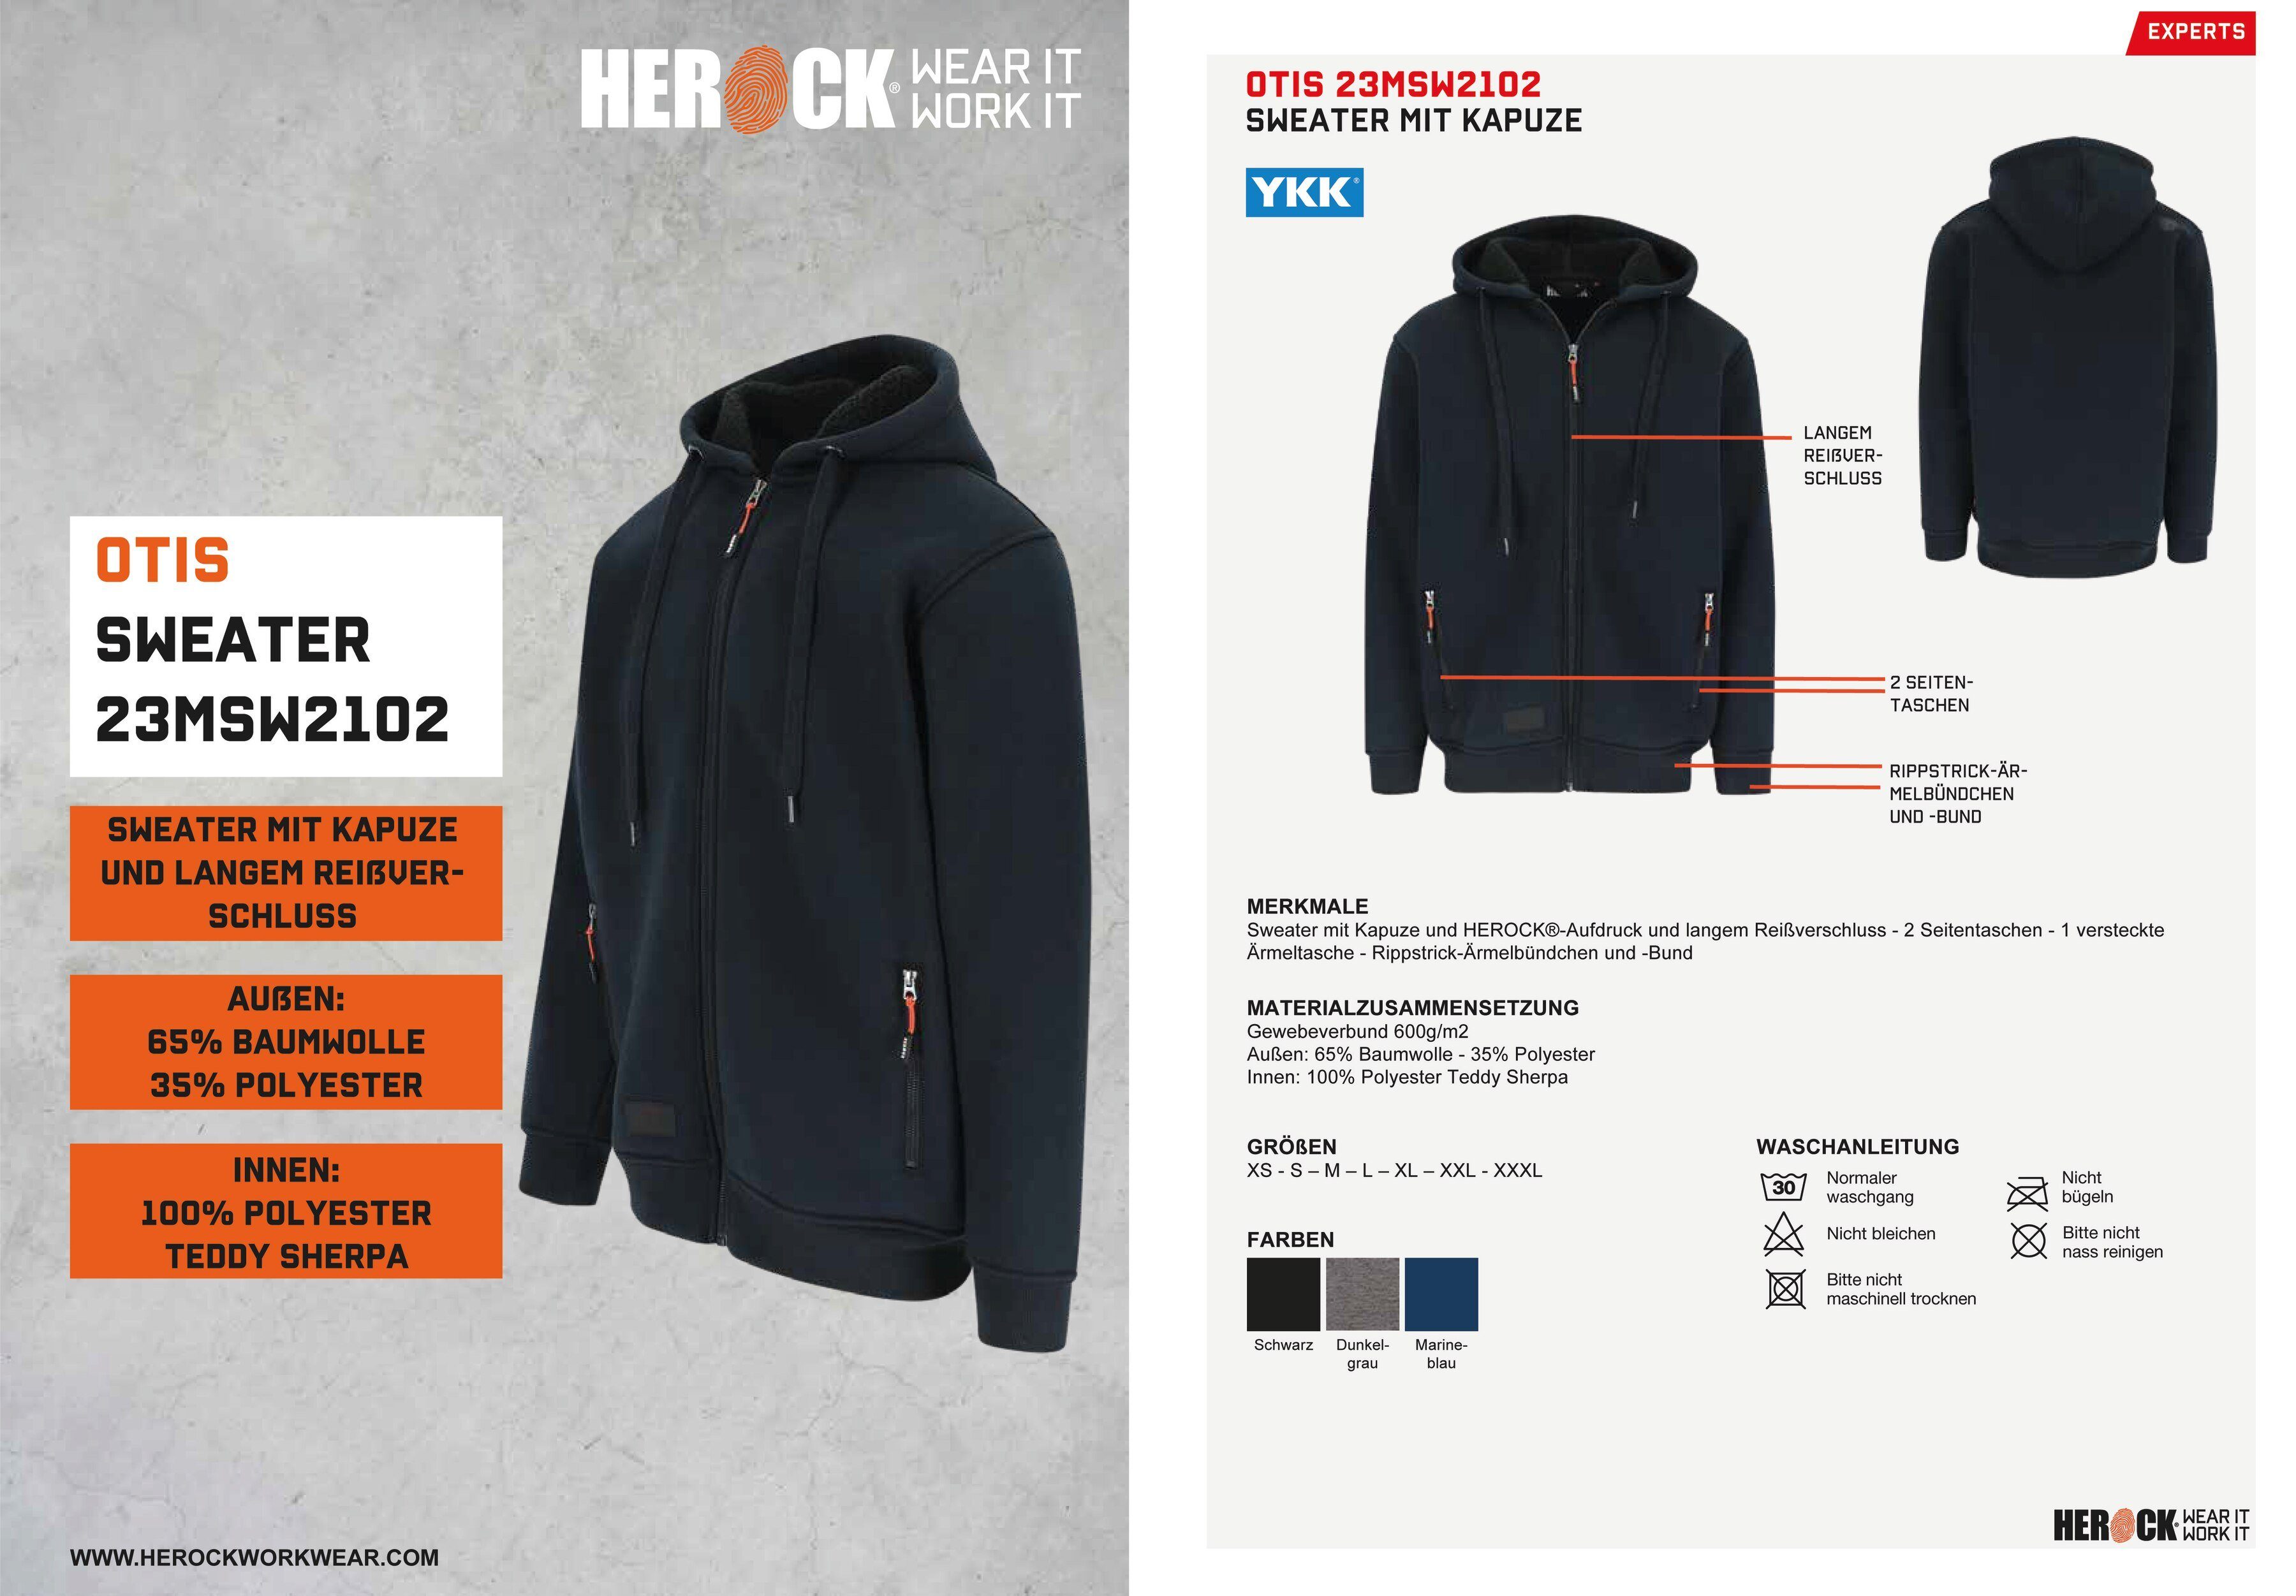 HEROCK®-Aufdruck, Reißverschluβ, marine langem Mit OTIS angenehm Herock und warm Sweater Kapuze,